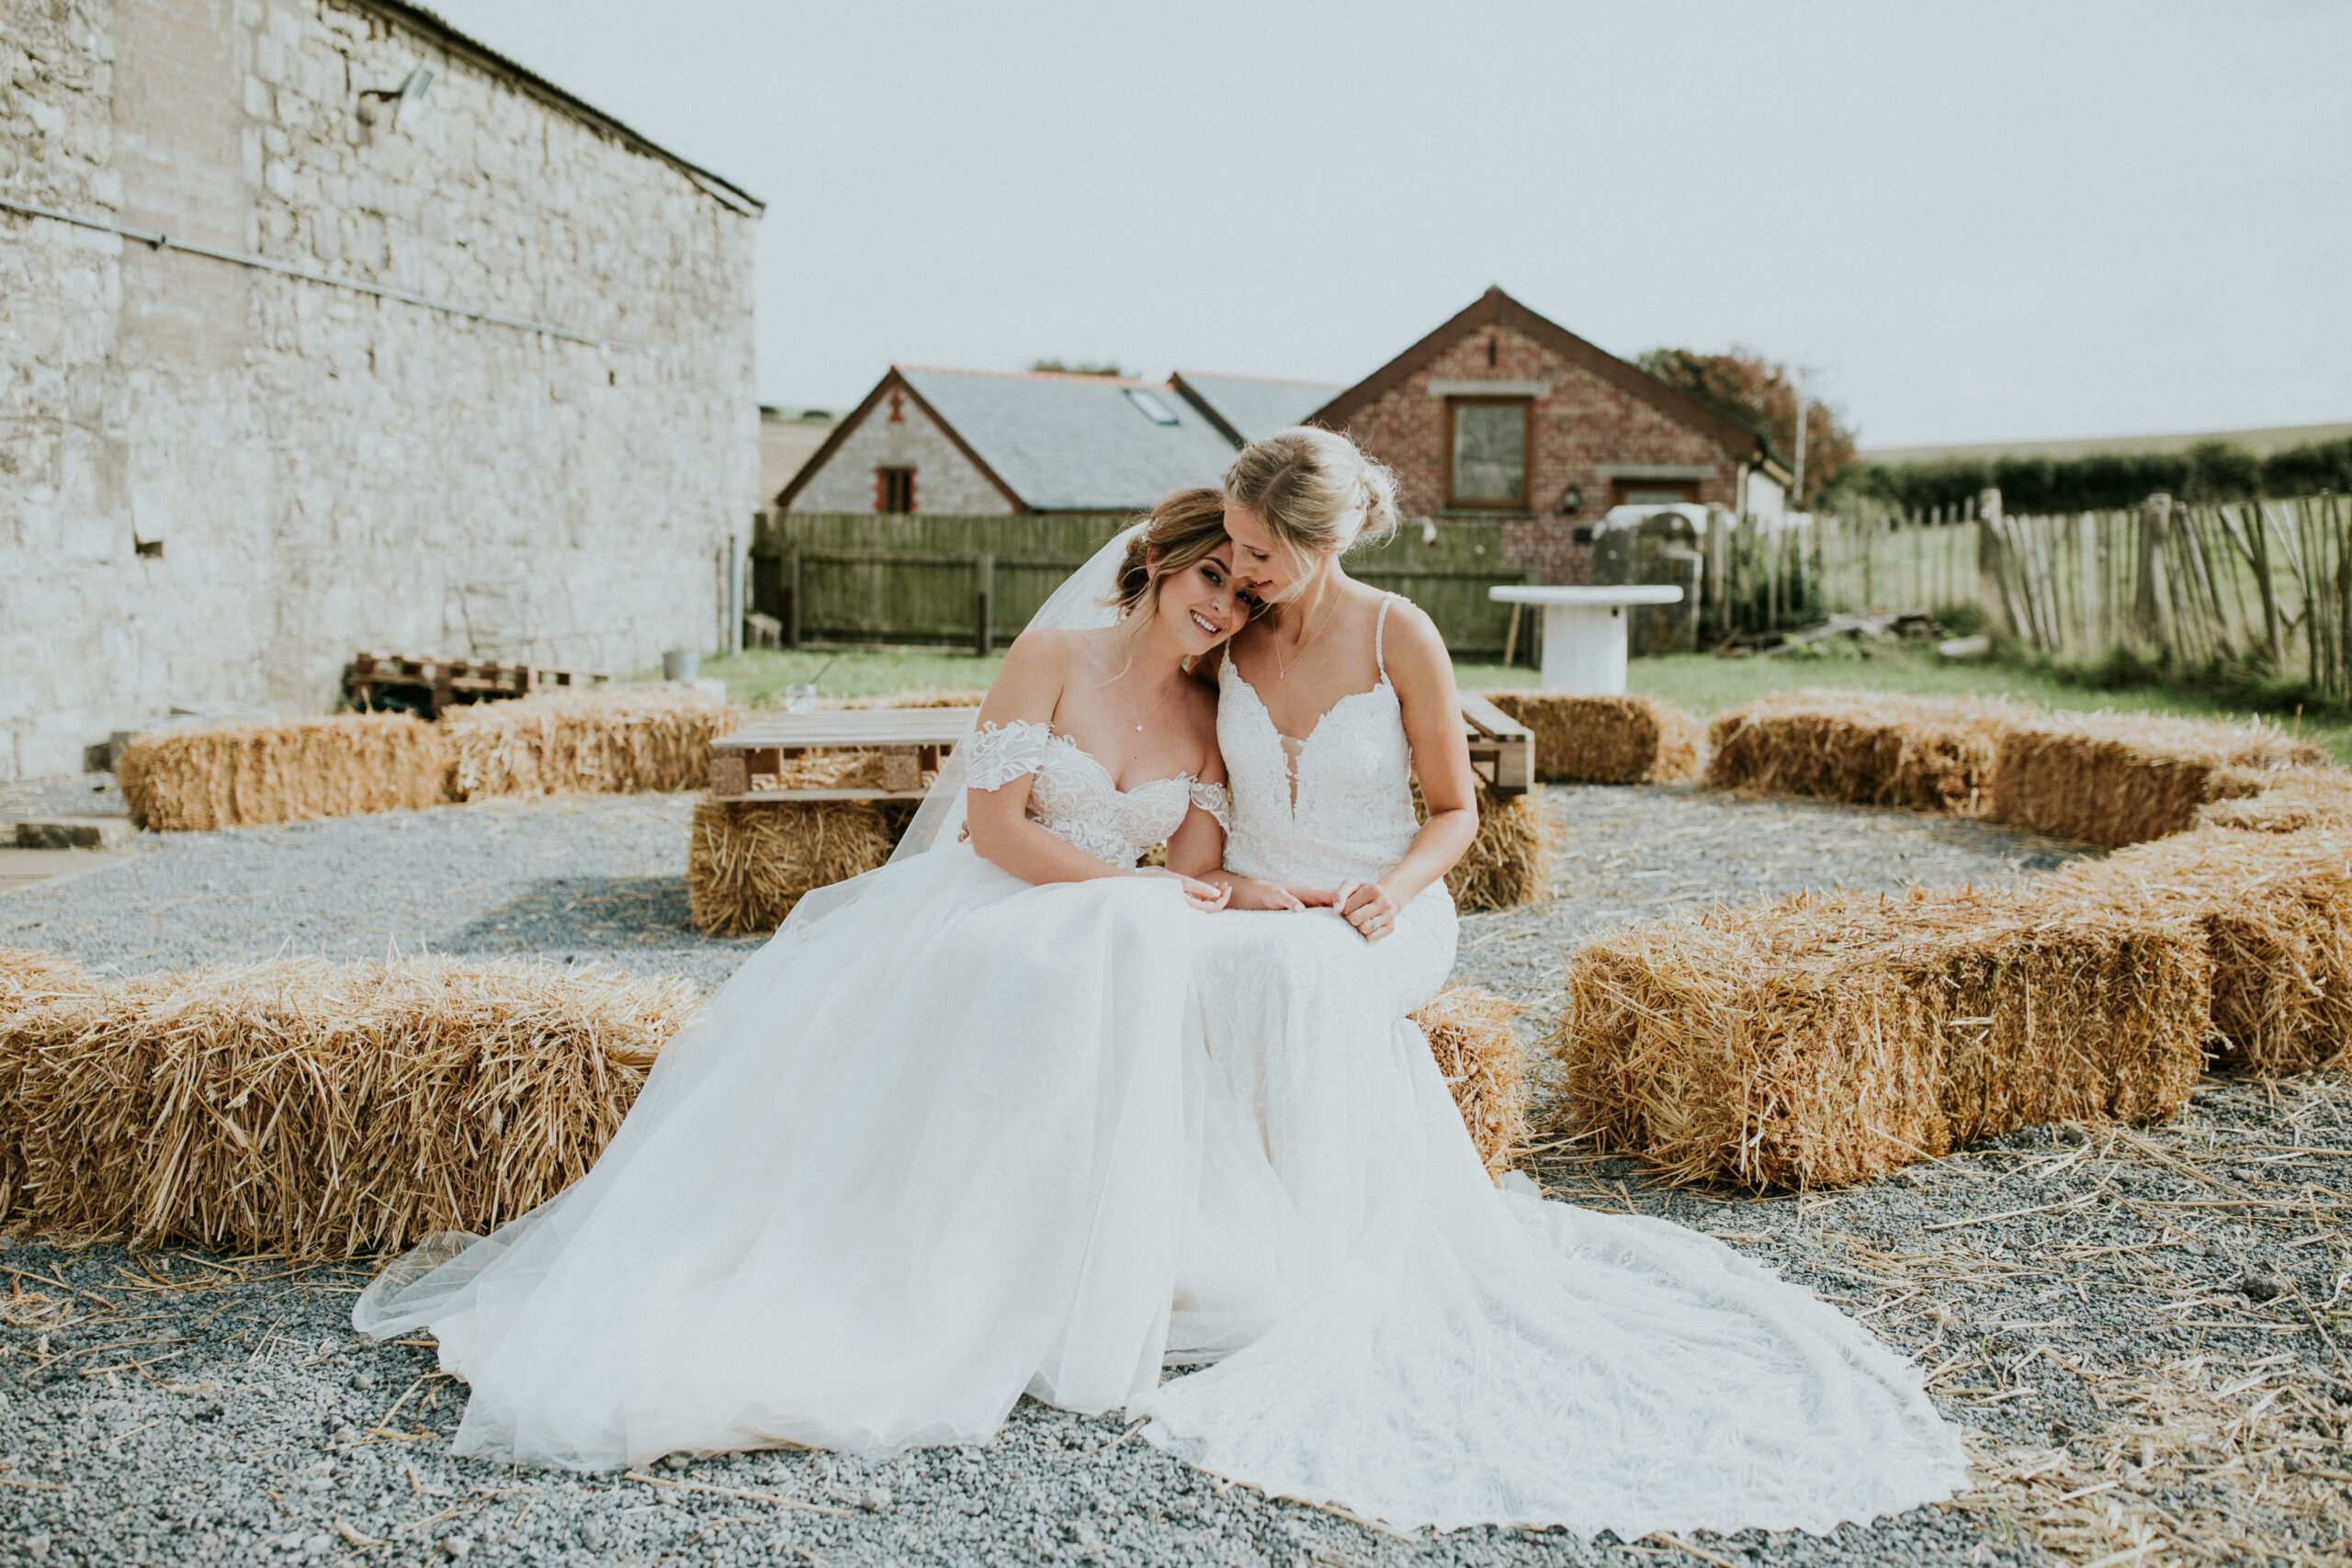 brides sitting on hay cuddling 